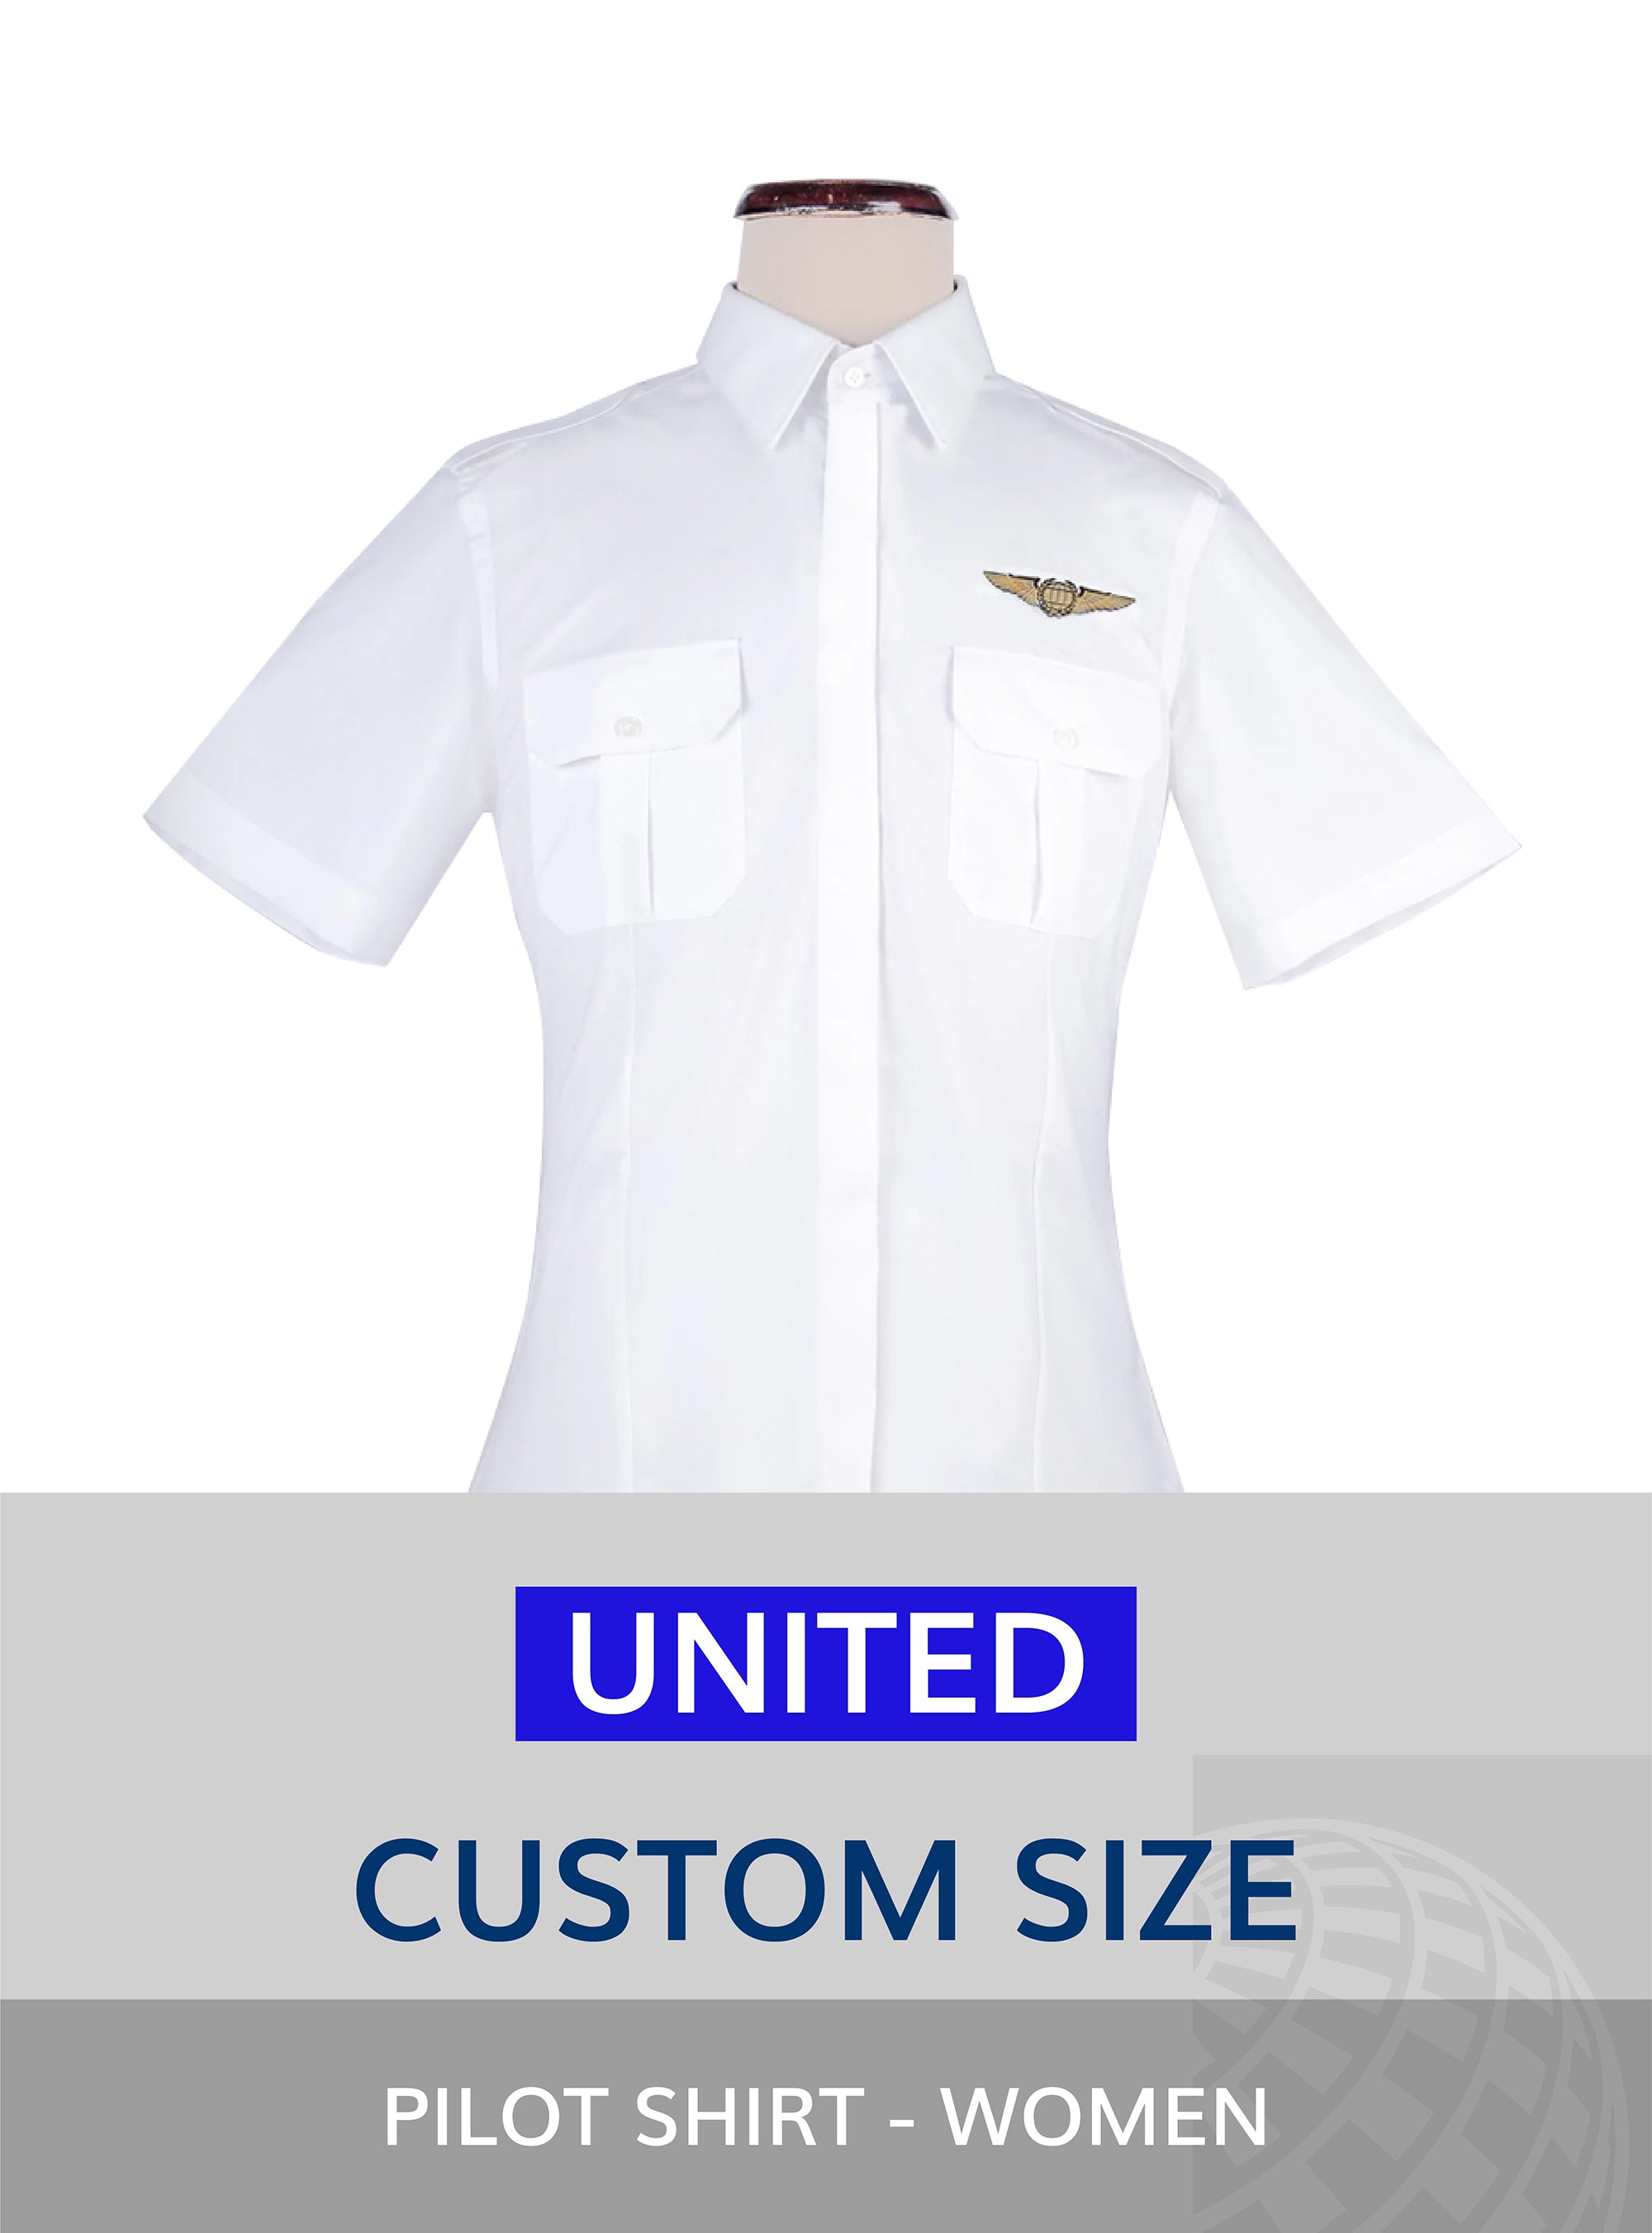 United Custom size pilot shit for women